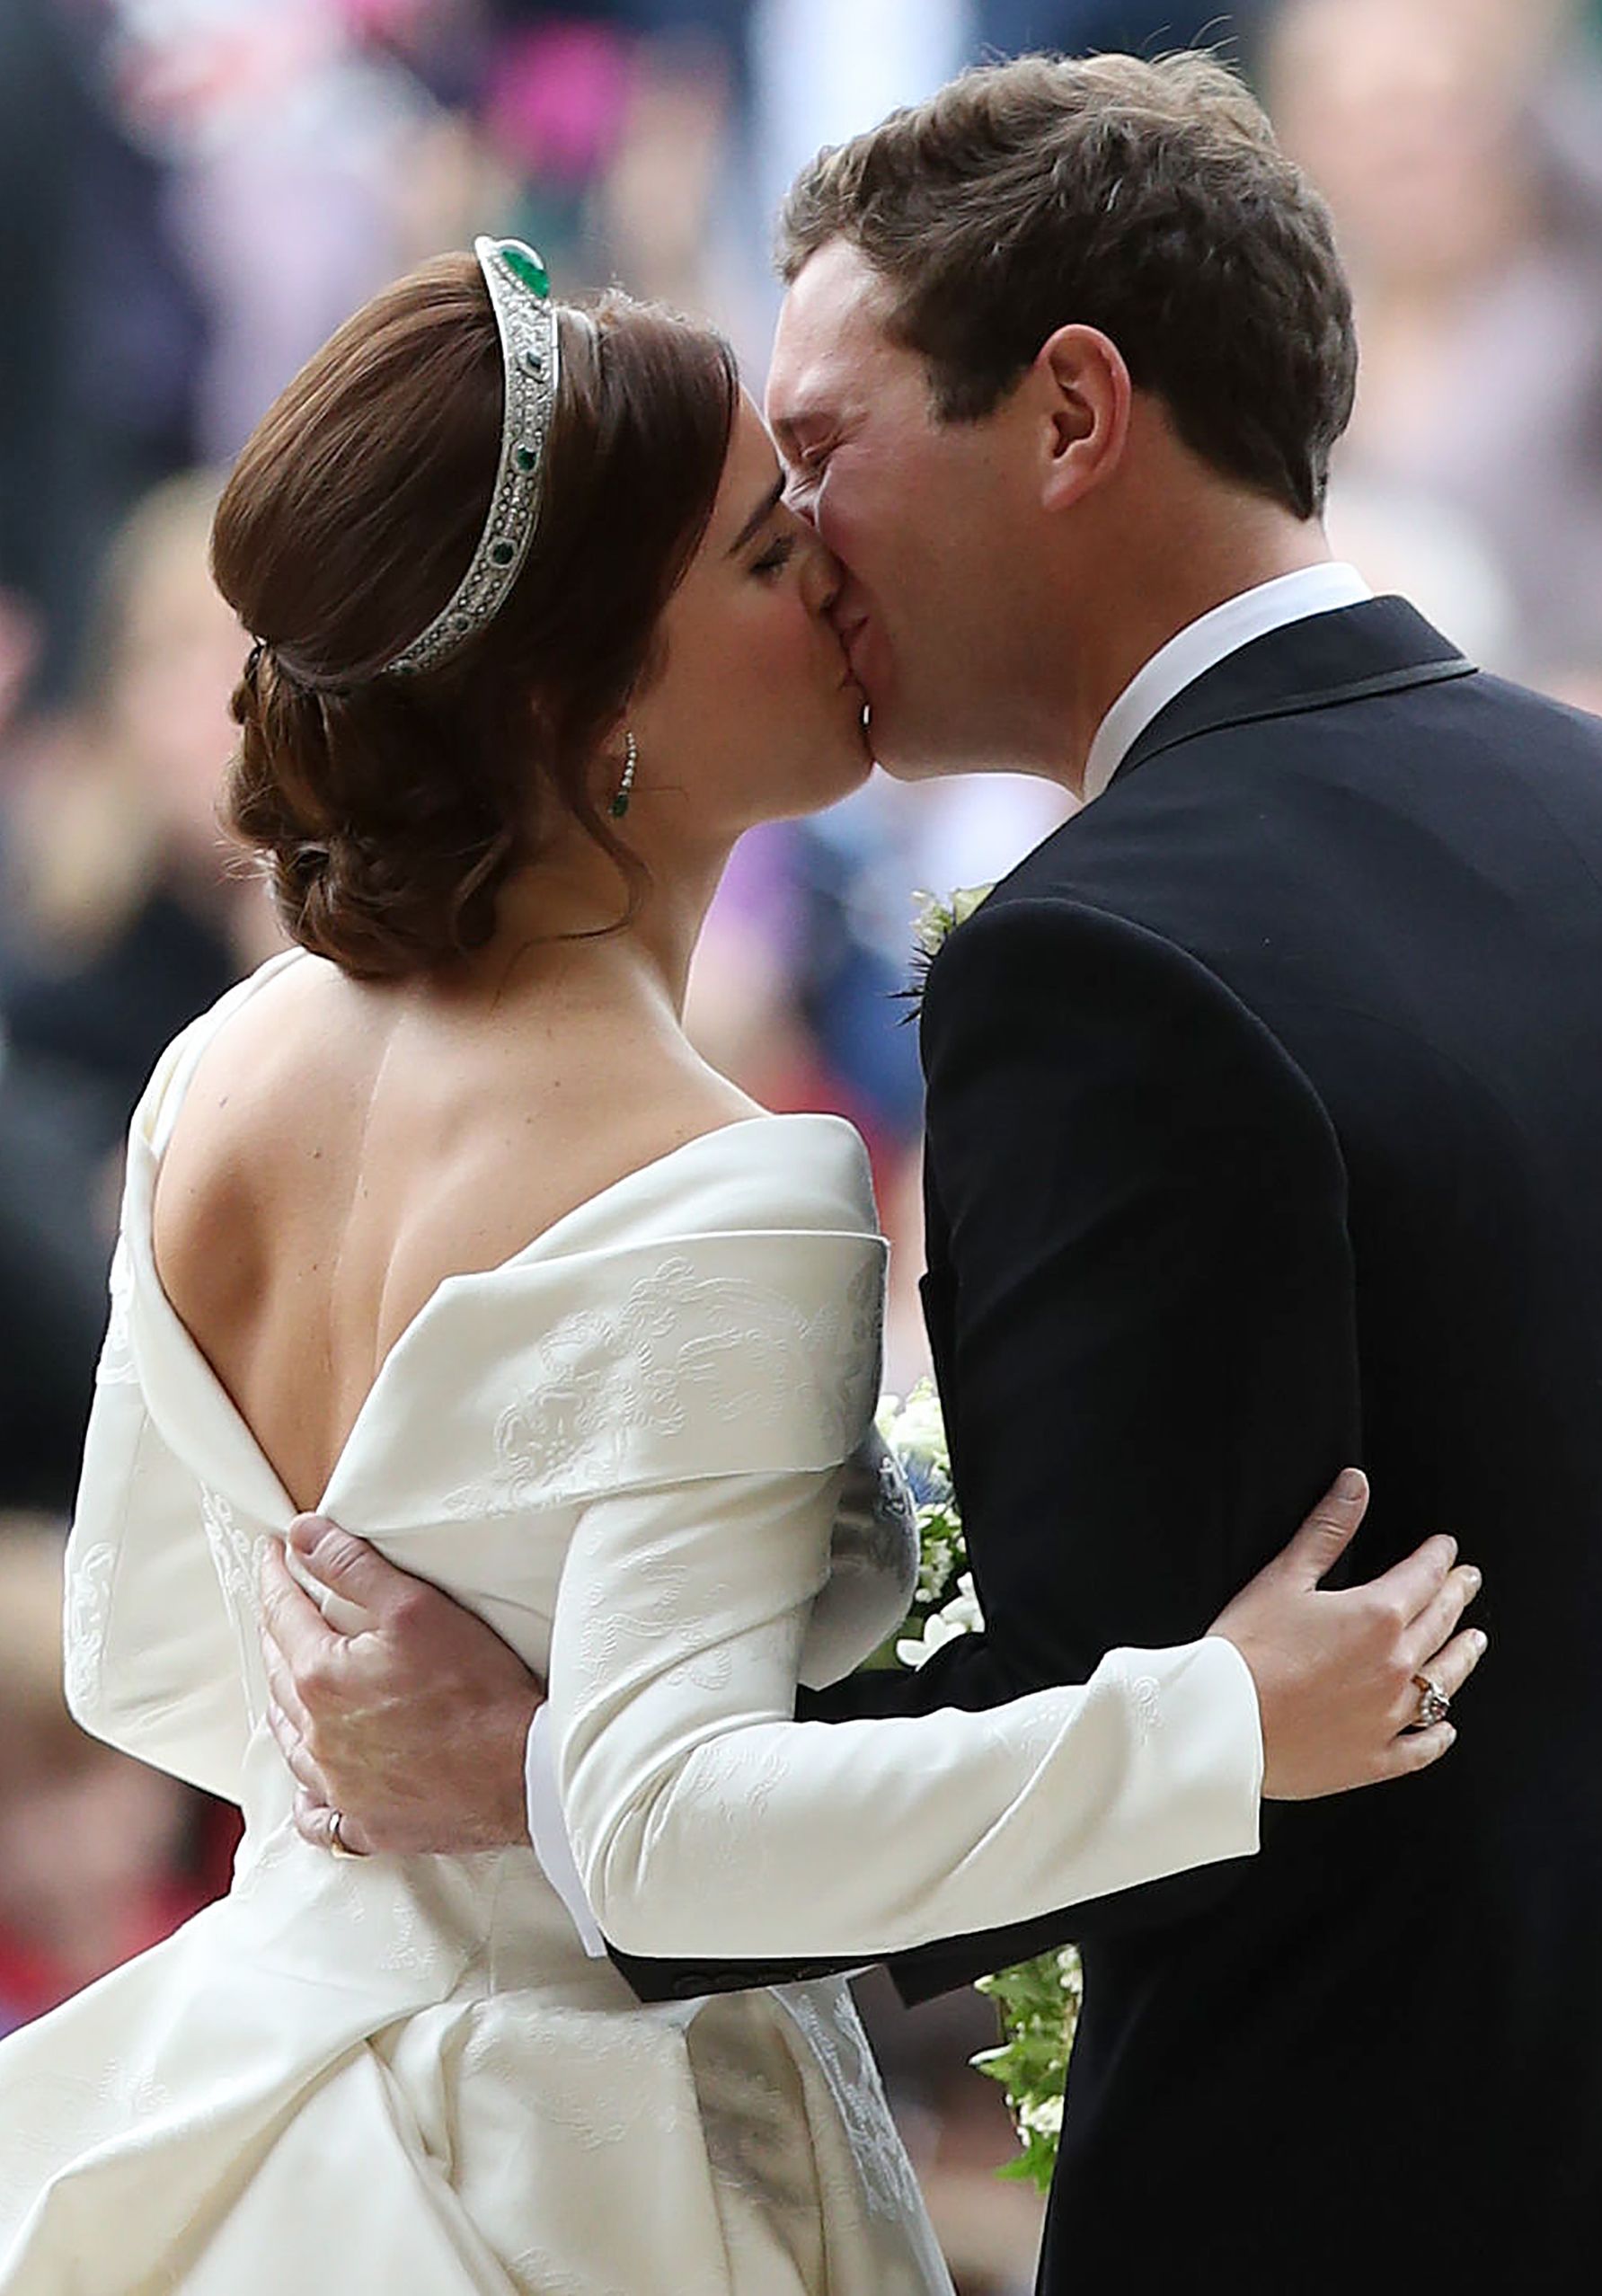 As fotos do casamento da princesa Eugenie e Jack Brooksbank | FOTOGALERIA